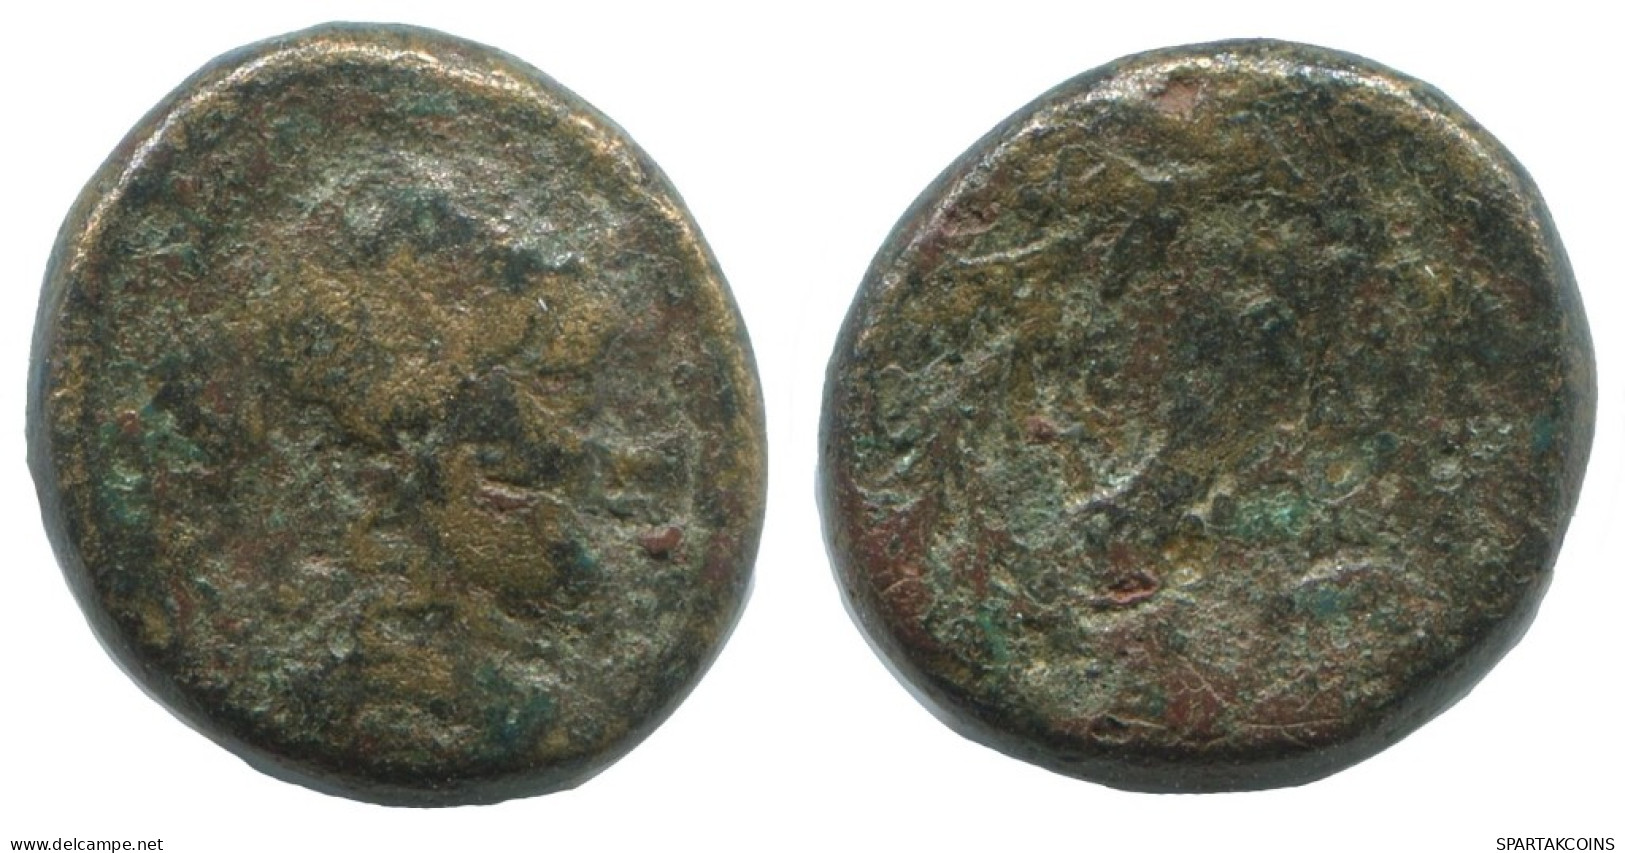 WREATH GENUINE ANTIKE GRIECHISCHE Münze 3.3g/15mm #AG200.12.D.A - Griechische Münzen